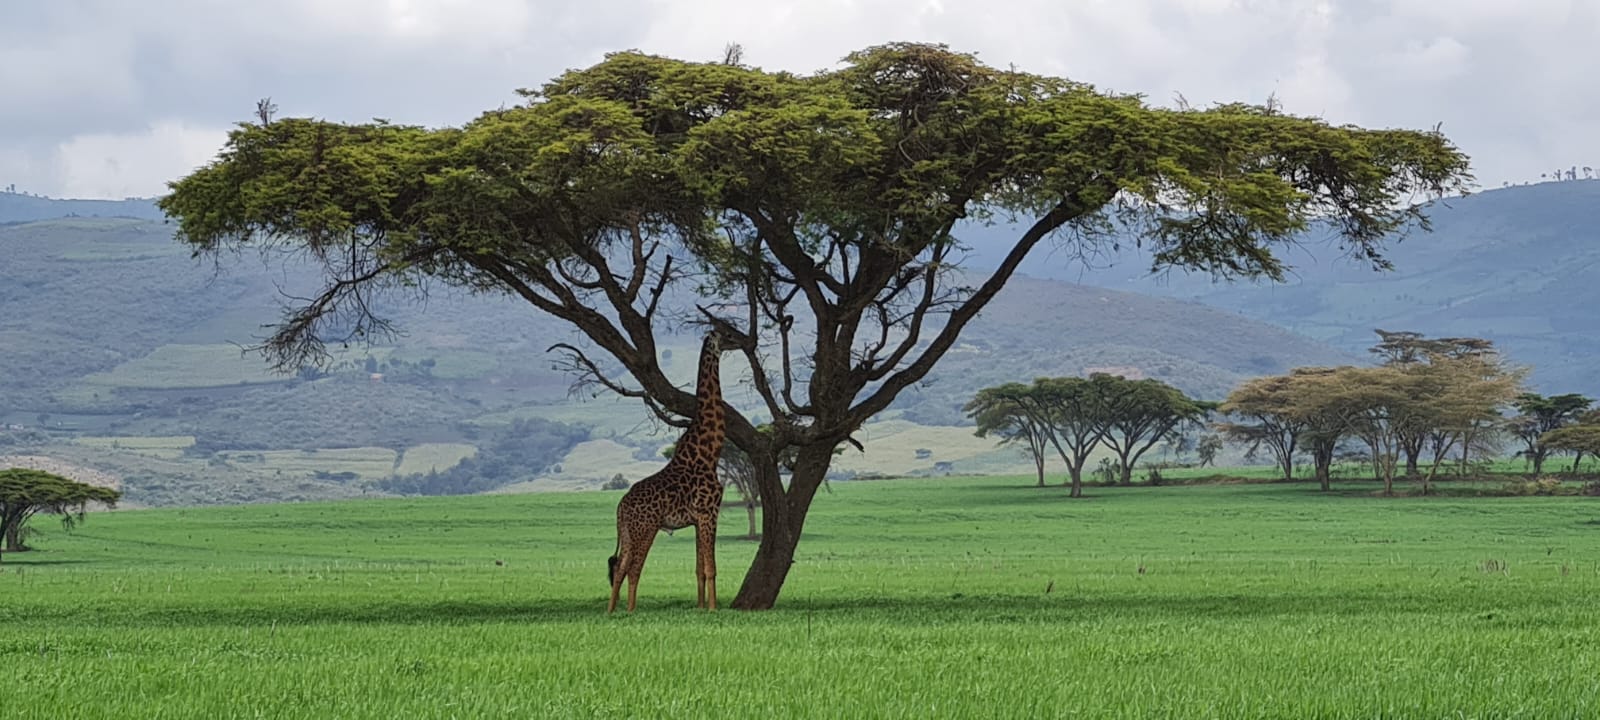 חוות נדביבי בקניה צילום ערן בן יאיר